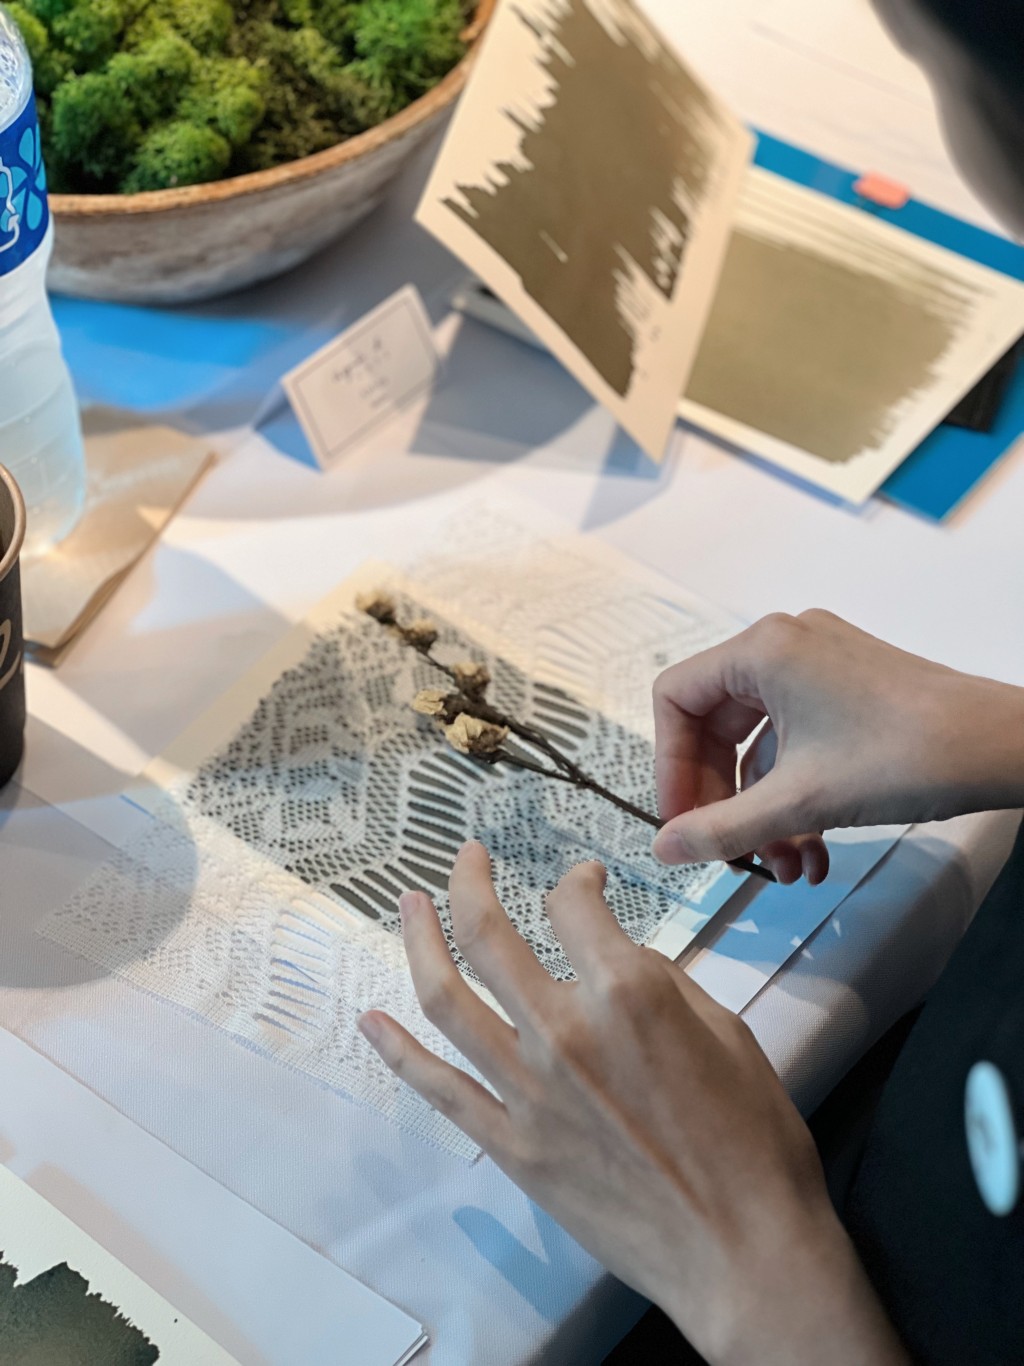 参加者于咖啡蓝晒艺术工作坊可制作两幅不同技巧的作品。（图片来源：agnès b.）